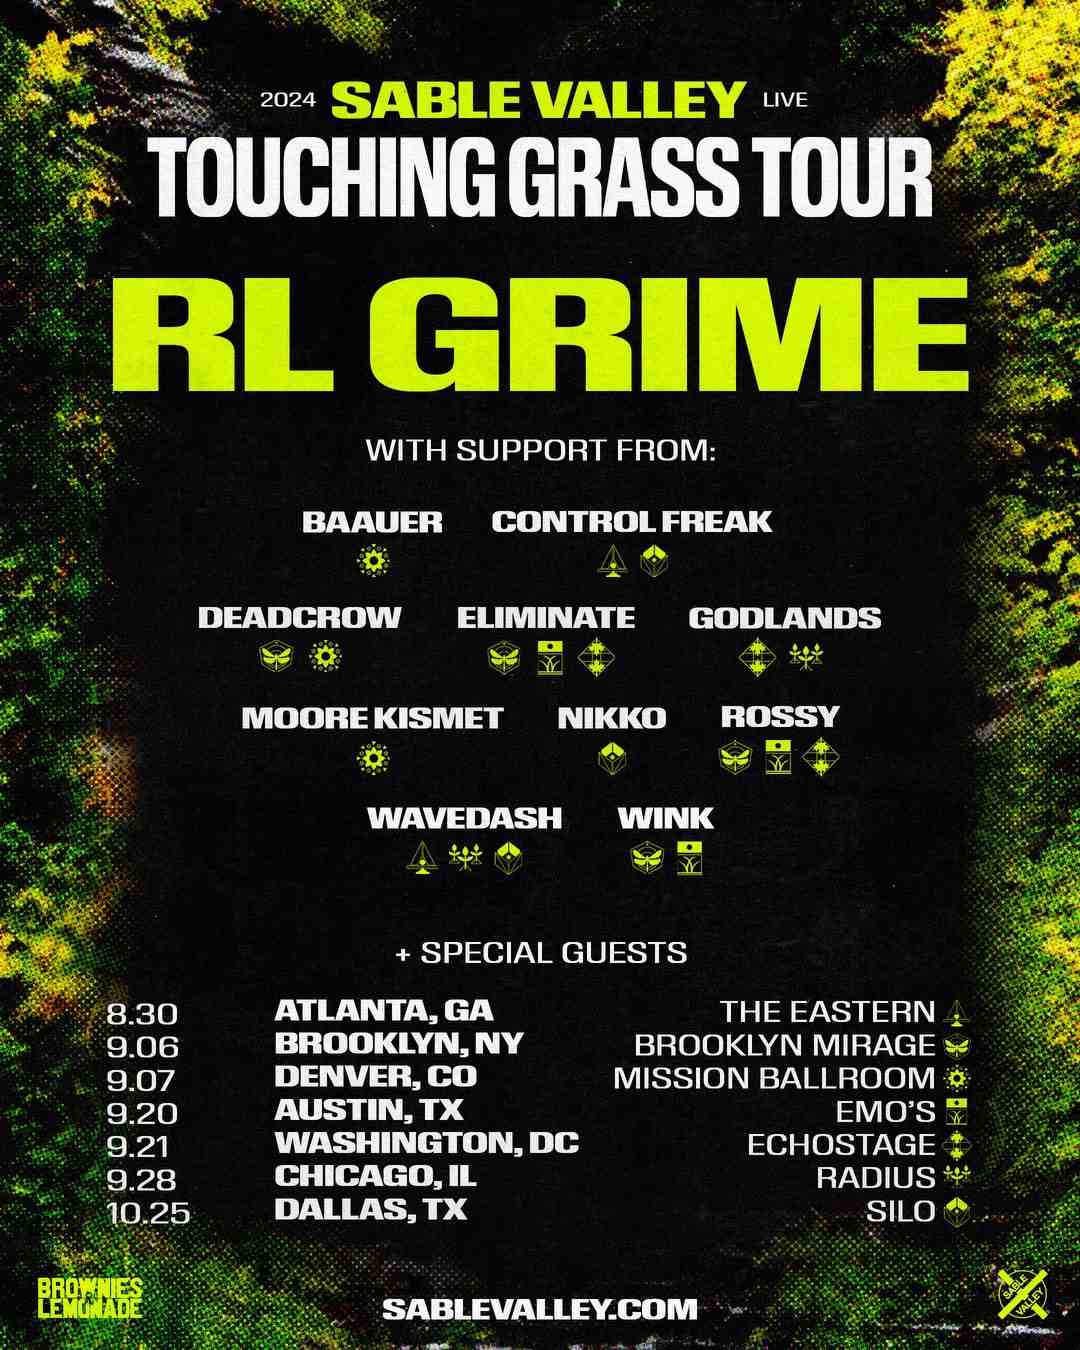 rl-grime-touching-grass-tour-2024-09-21-washington